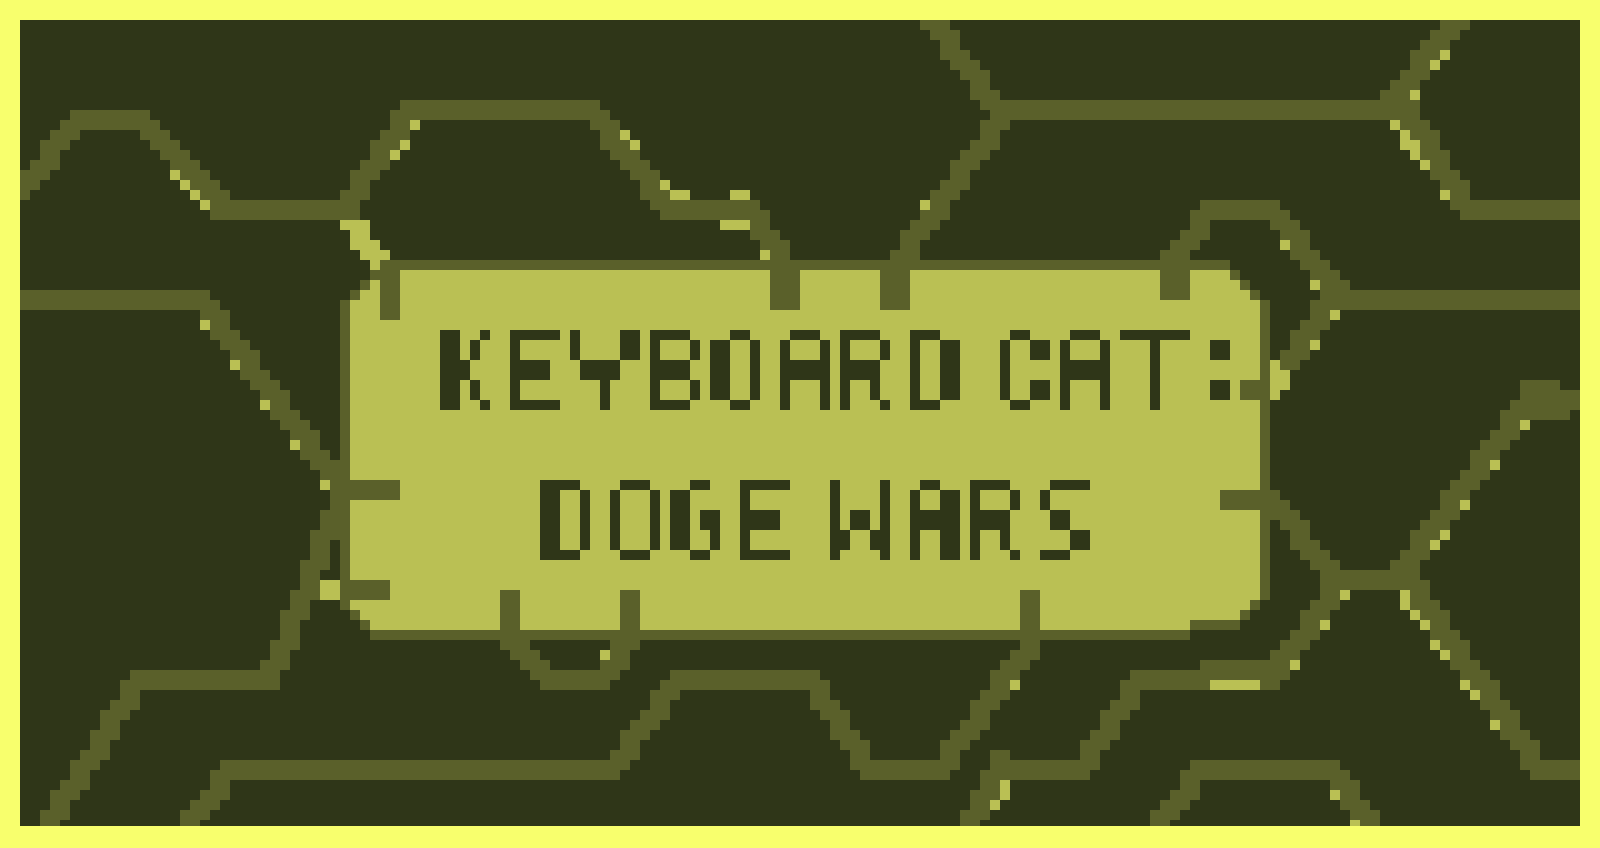 KEYBOARD CAT: Doge Wars